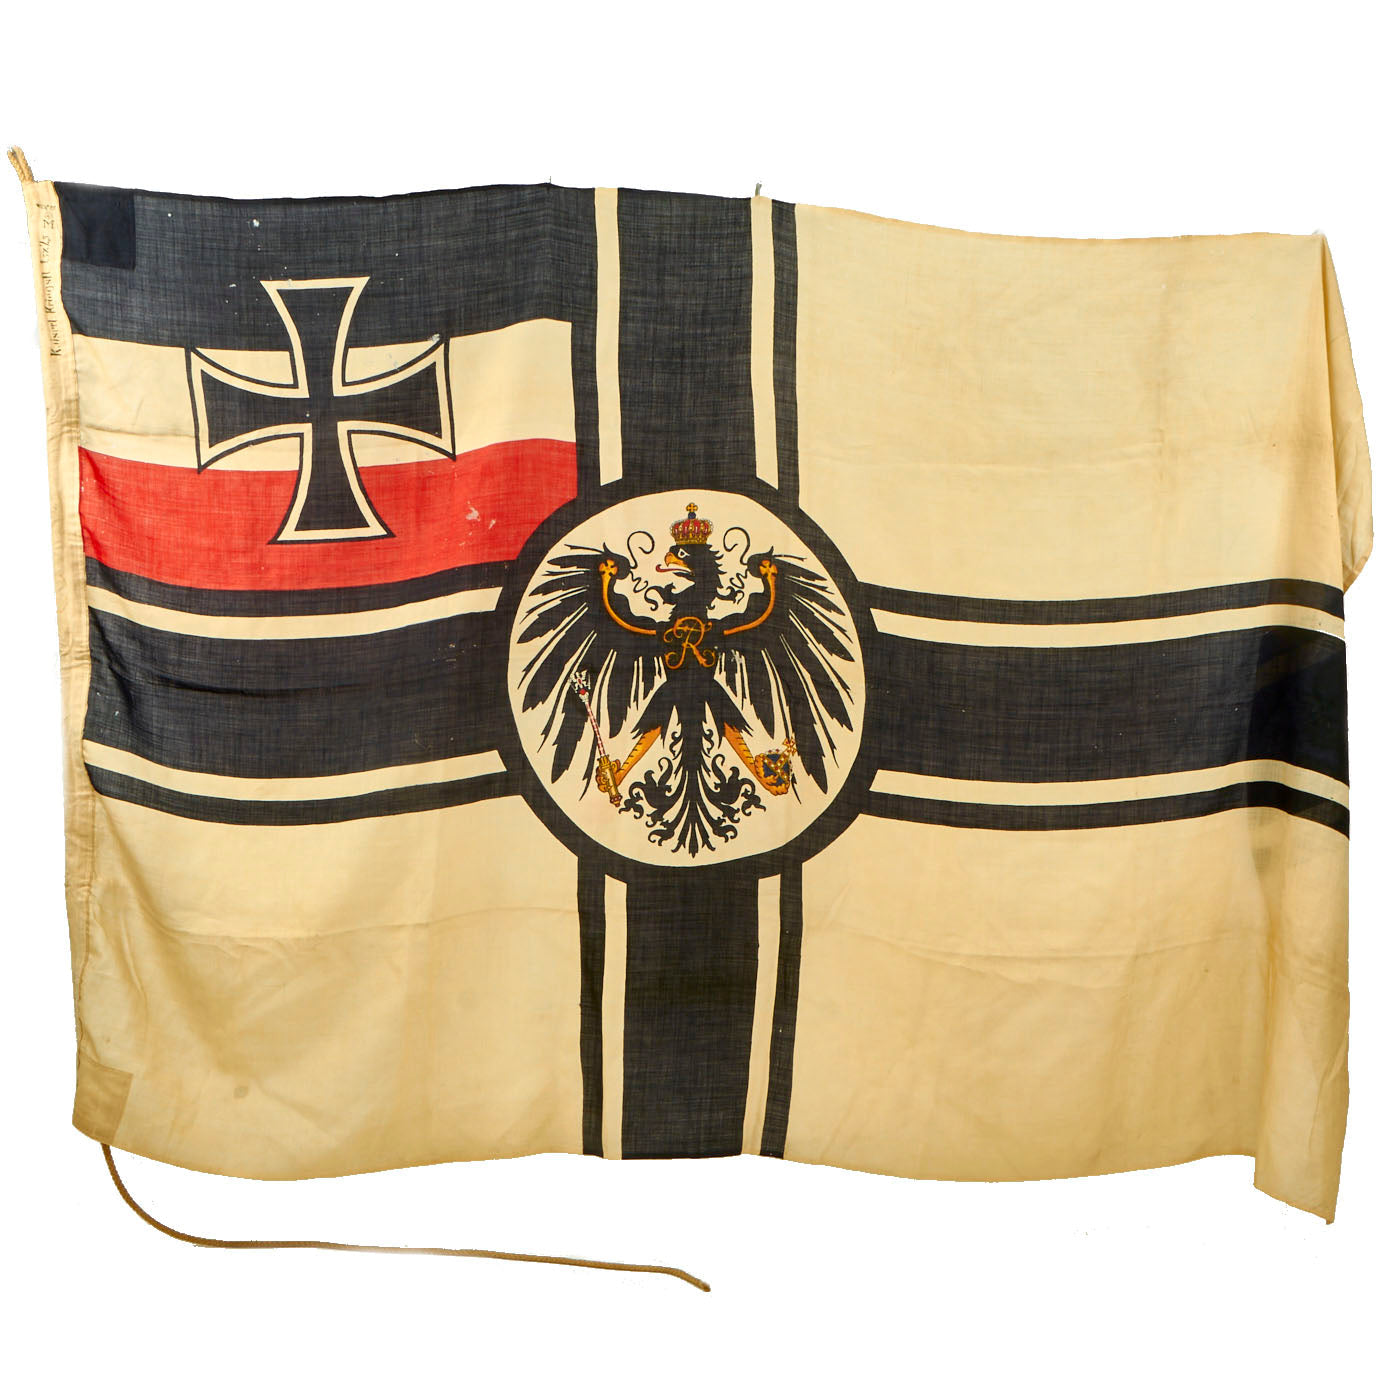 old german flag